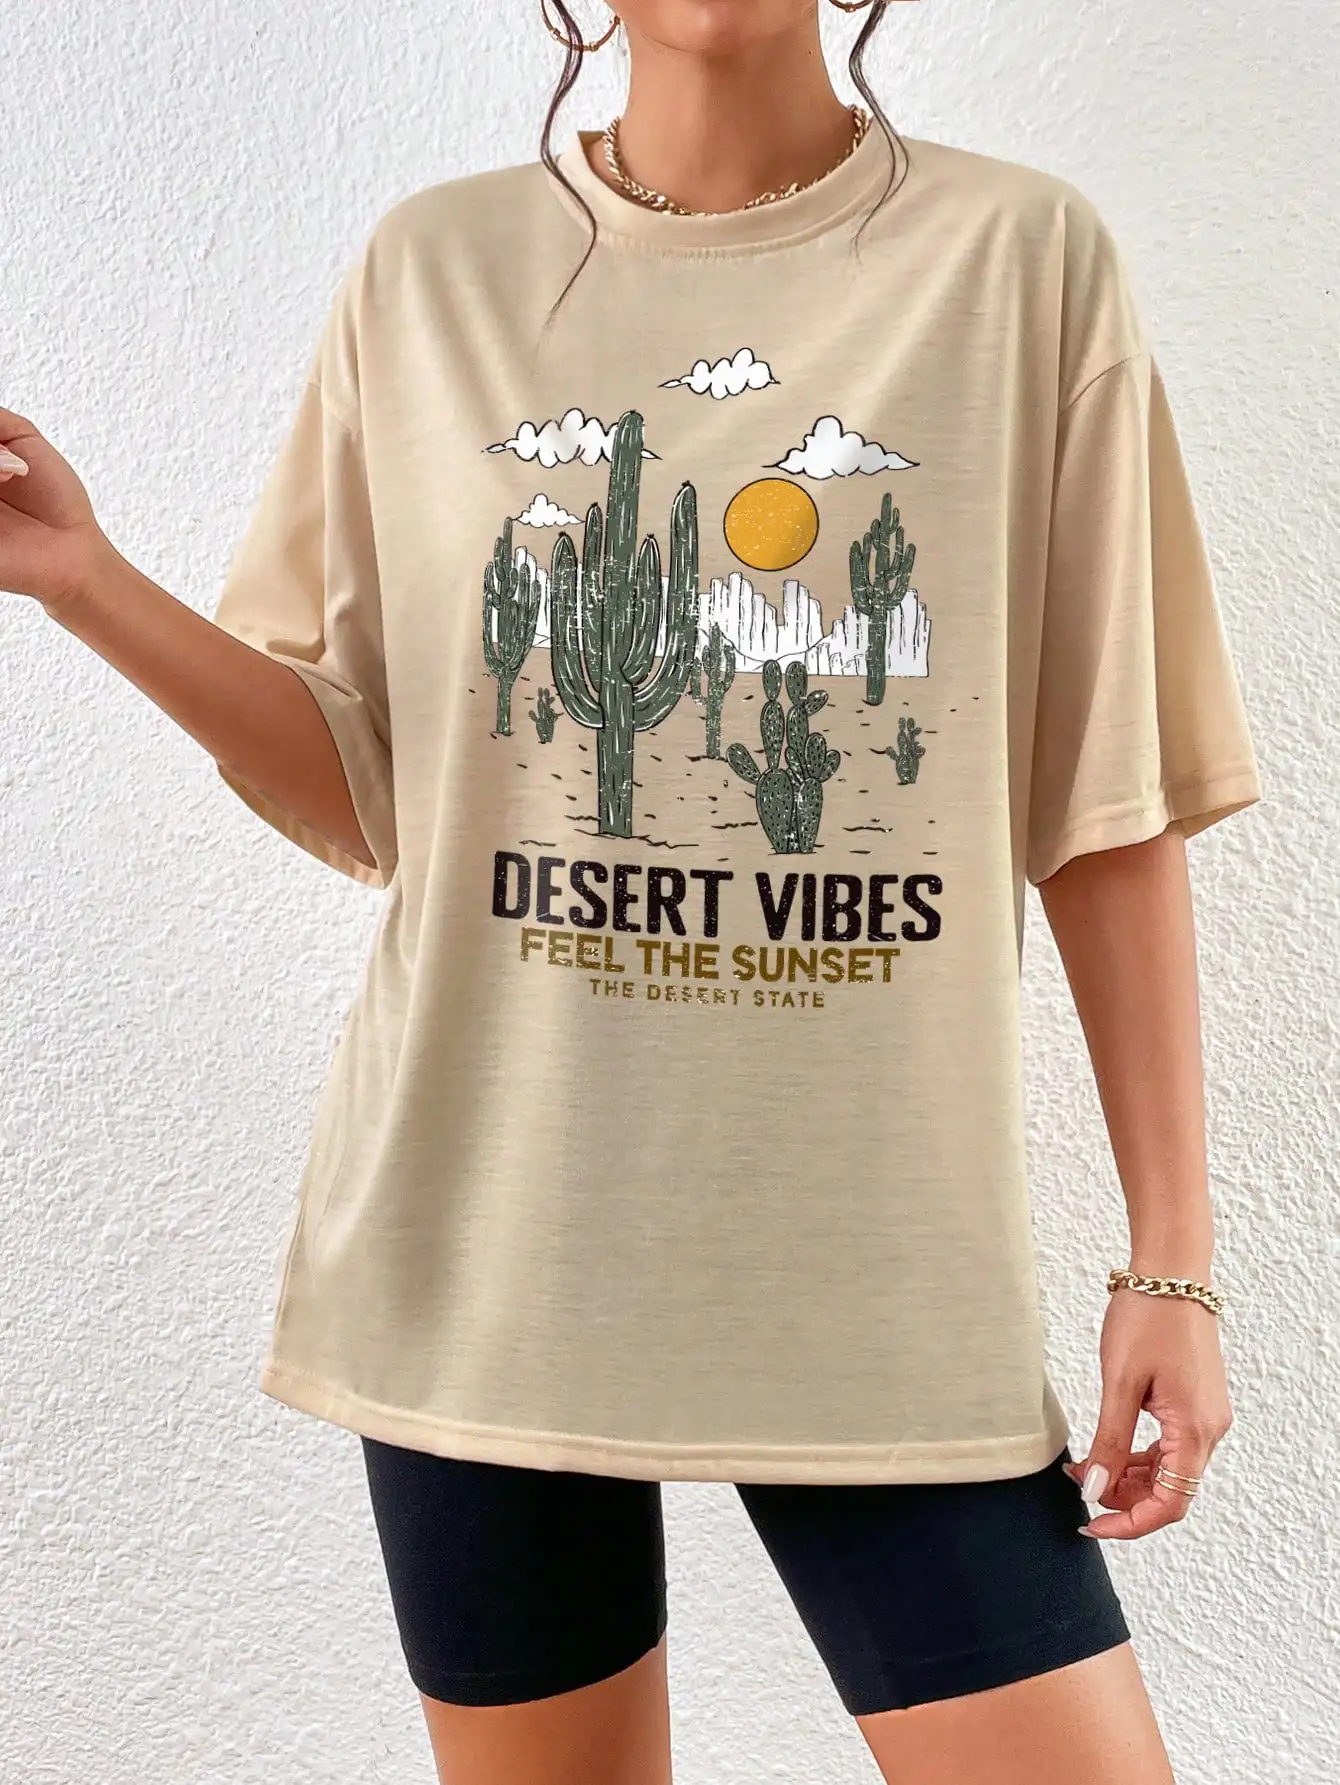 

Хлопковая футболка Desert Vibes Feel The Sunset The Desert State, индивидуальная летняя футболка, удобная мягкая футболка, футболки оверсайз